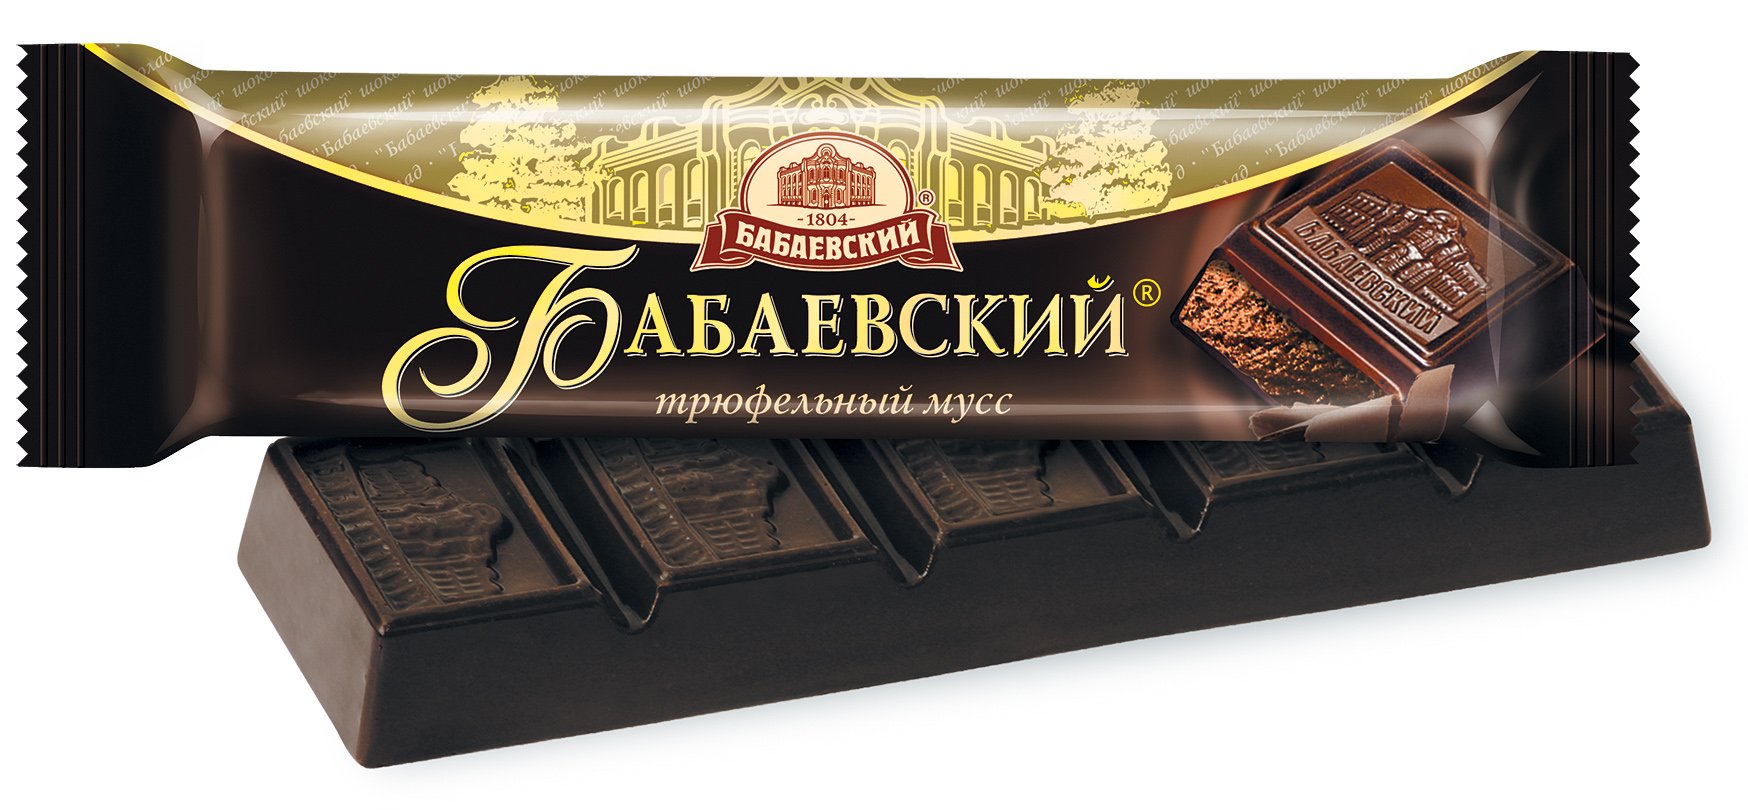 Шоколад Бабаевский трюфельный мусс